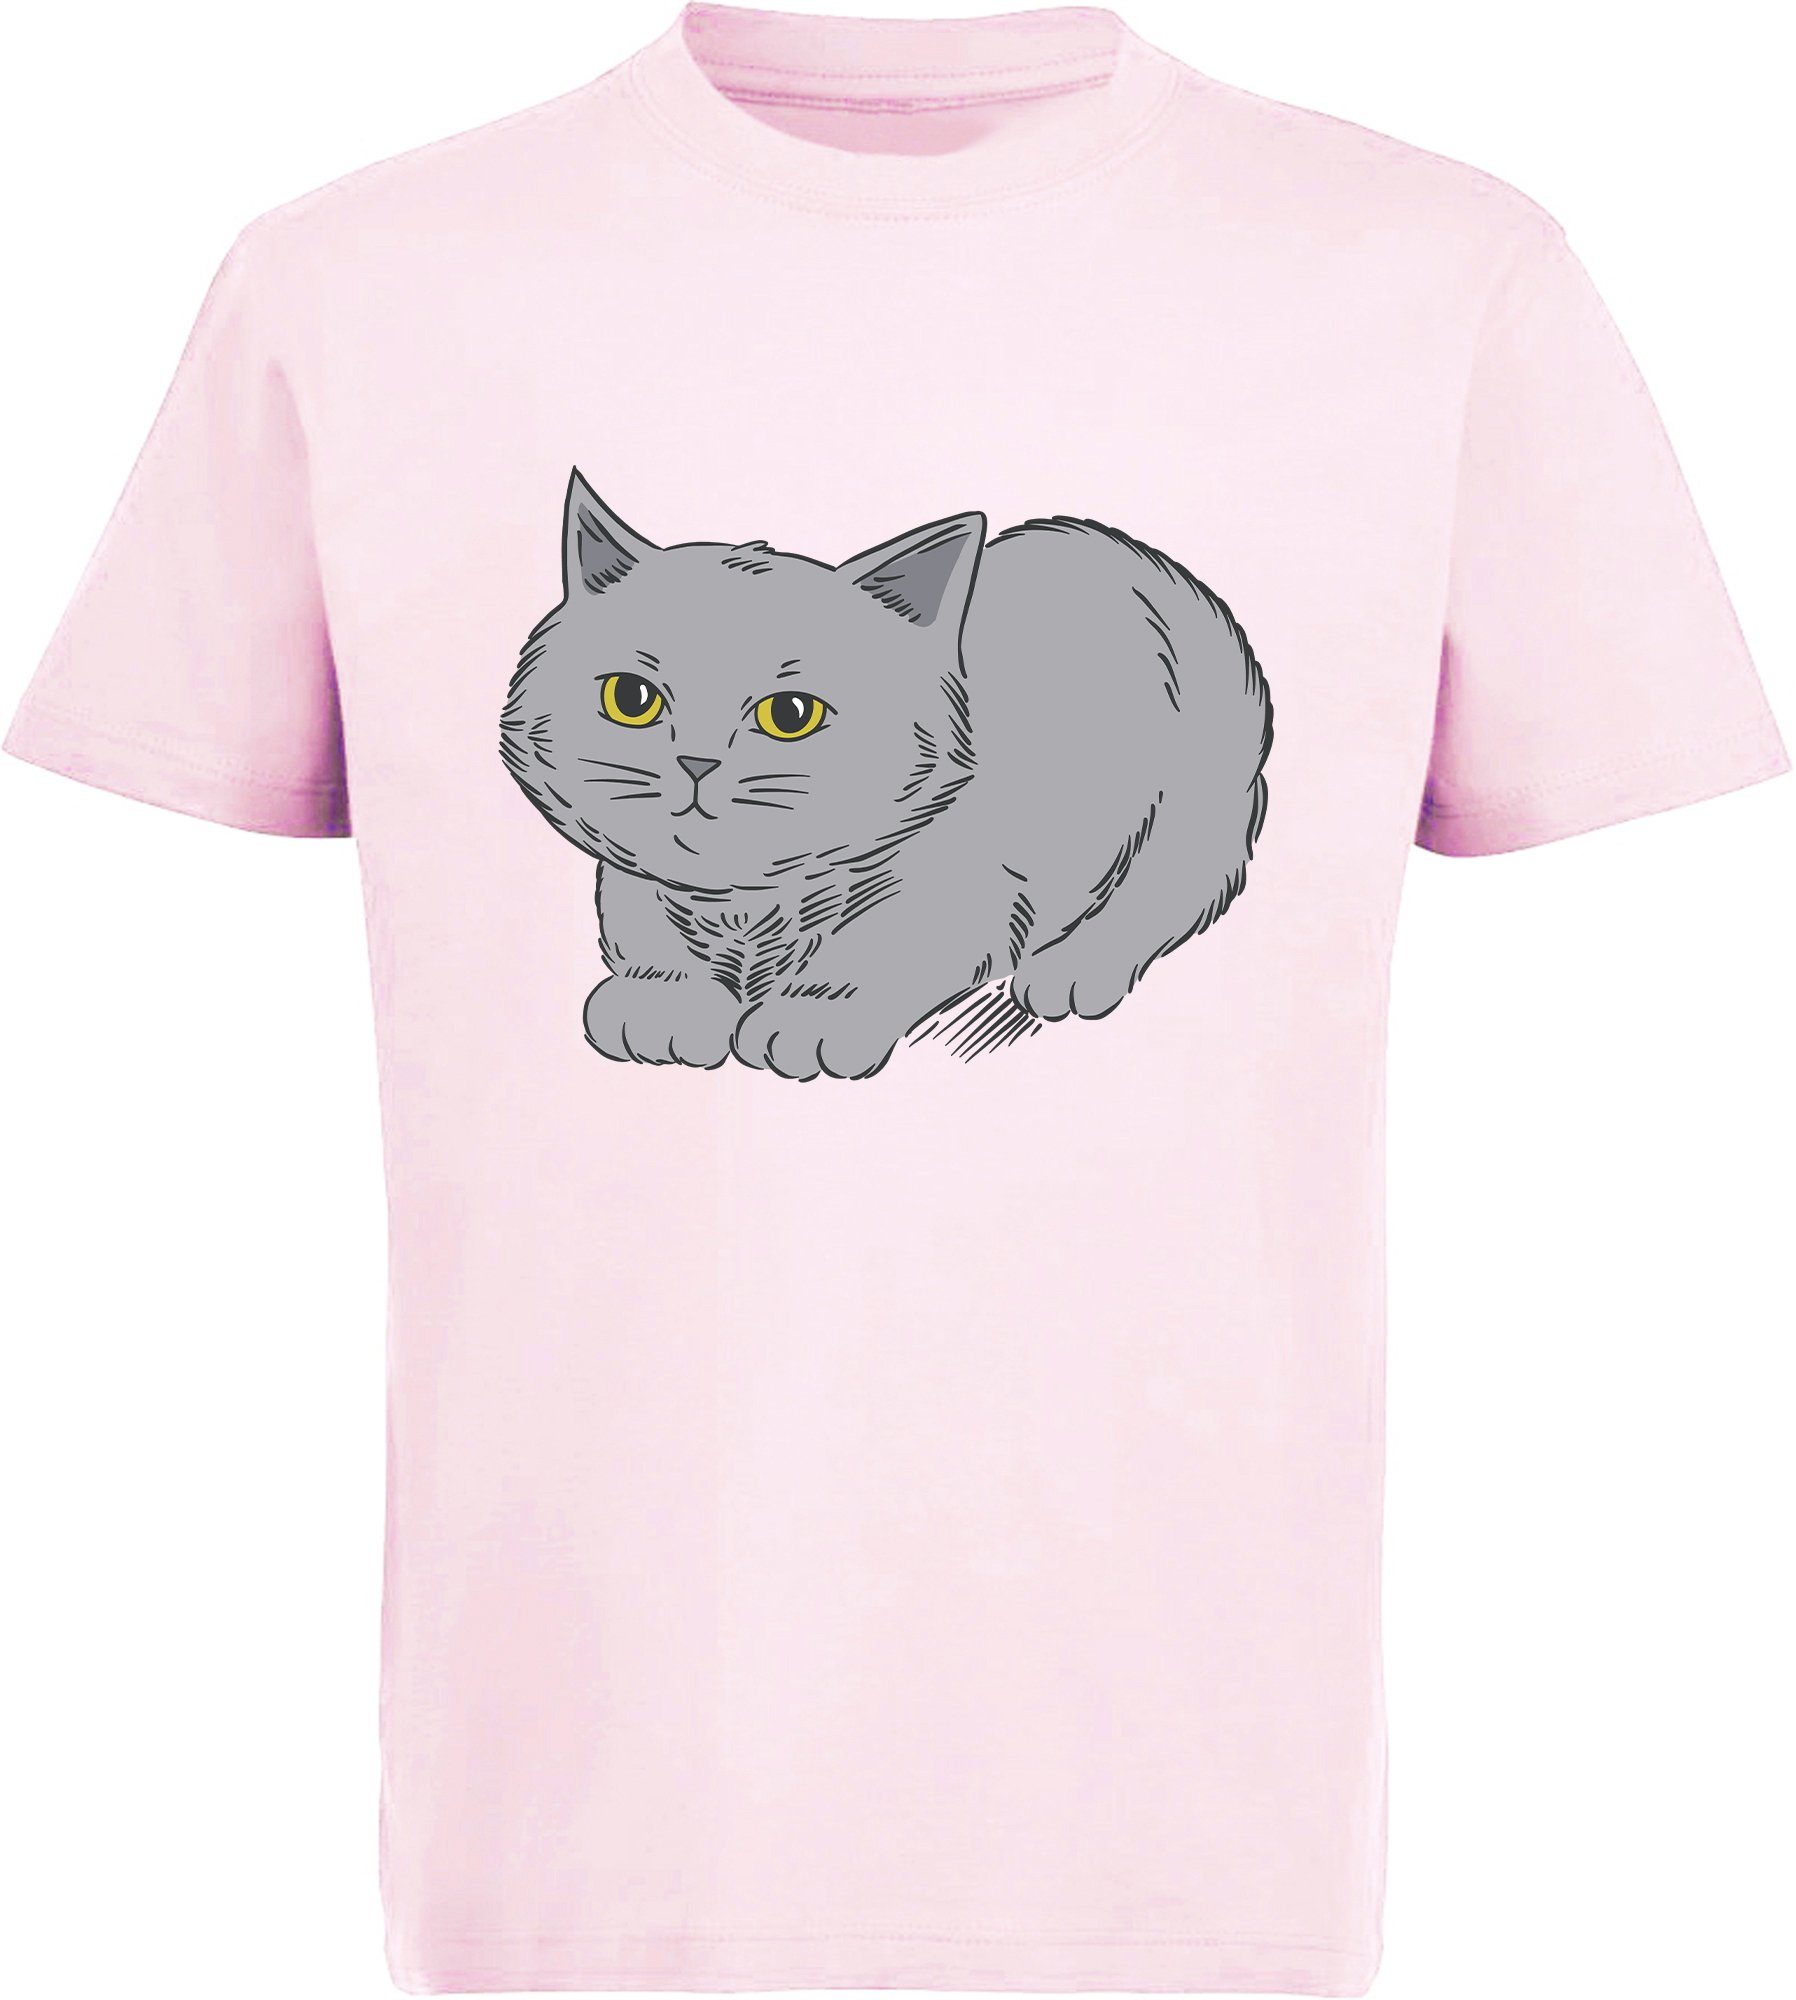 MyDesign24 Print-Shirt bedrucktes Mädchen T-Shirt mit niedlicher grauen Katze Baumwollshirt mit Katze, weiß, schwarz, rot, rosa, i107